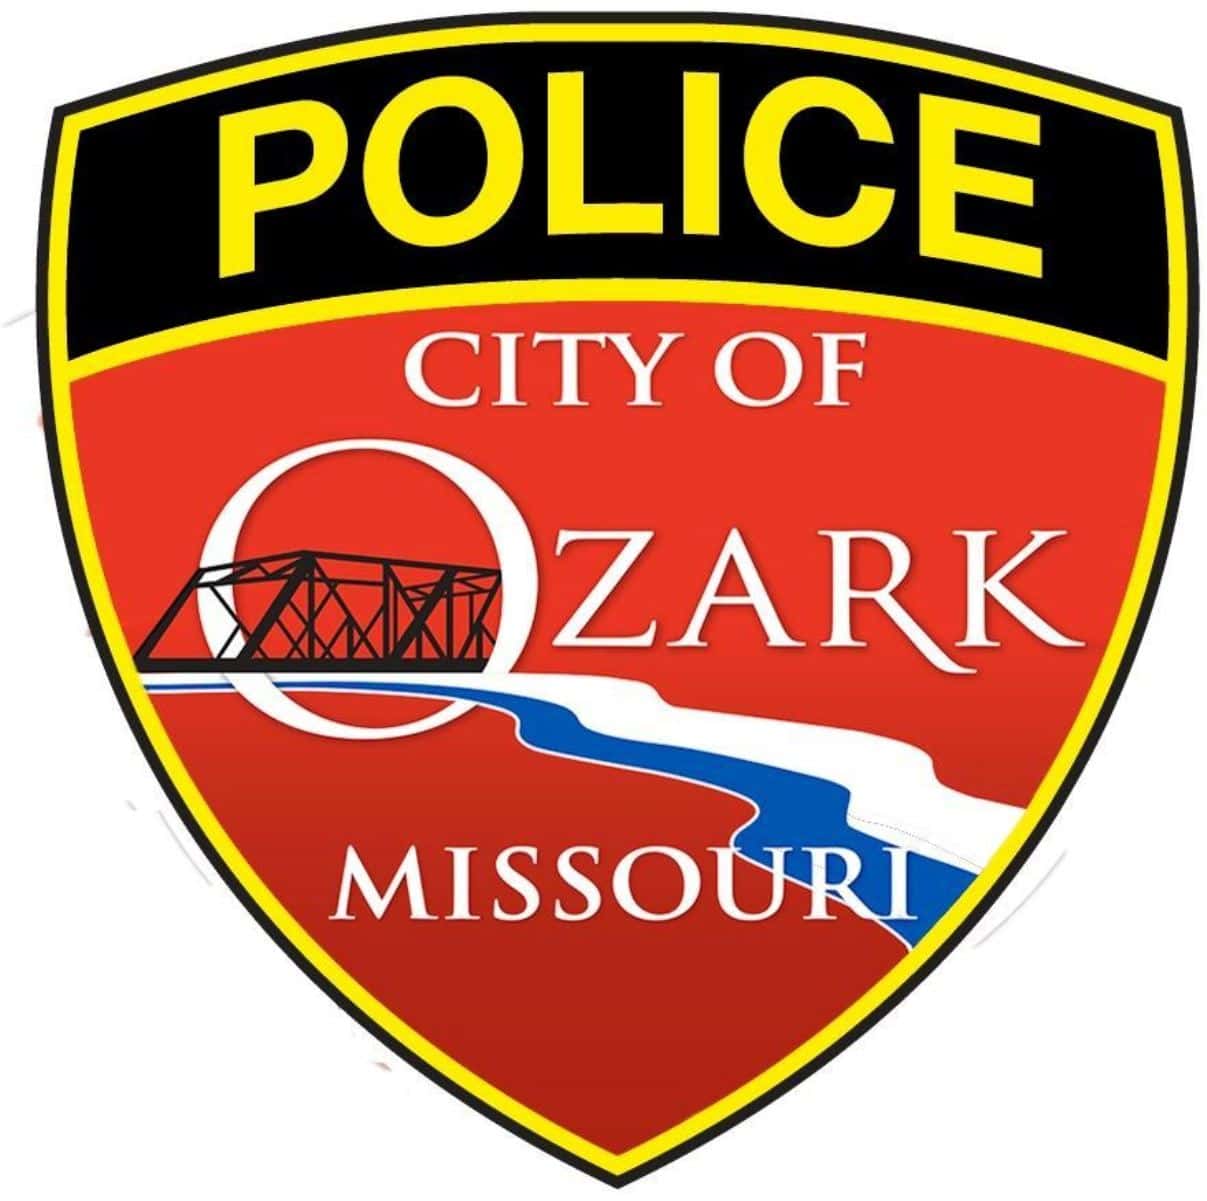 ozark-police-logo-1-24-19-jpg